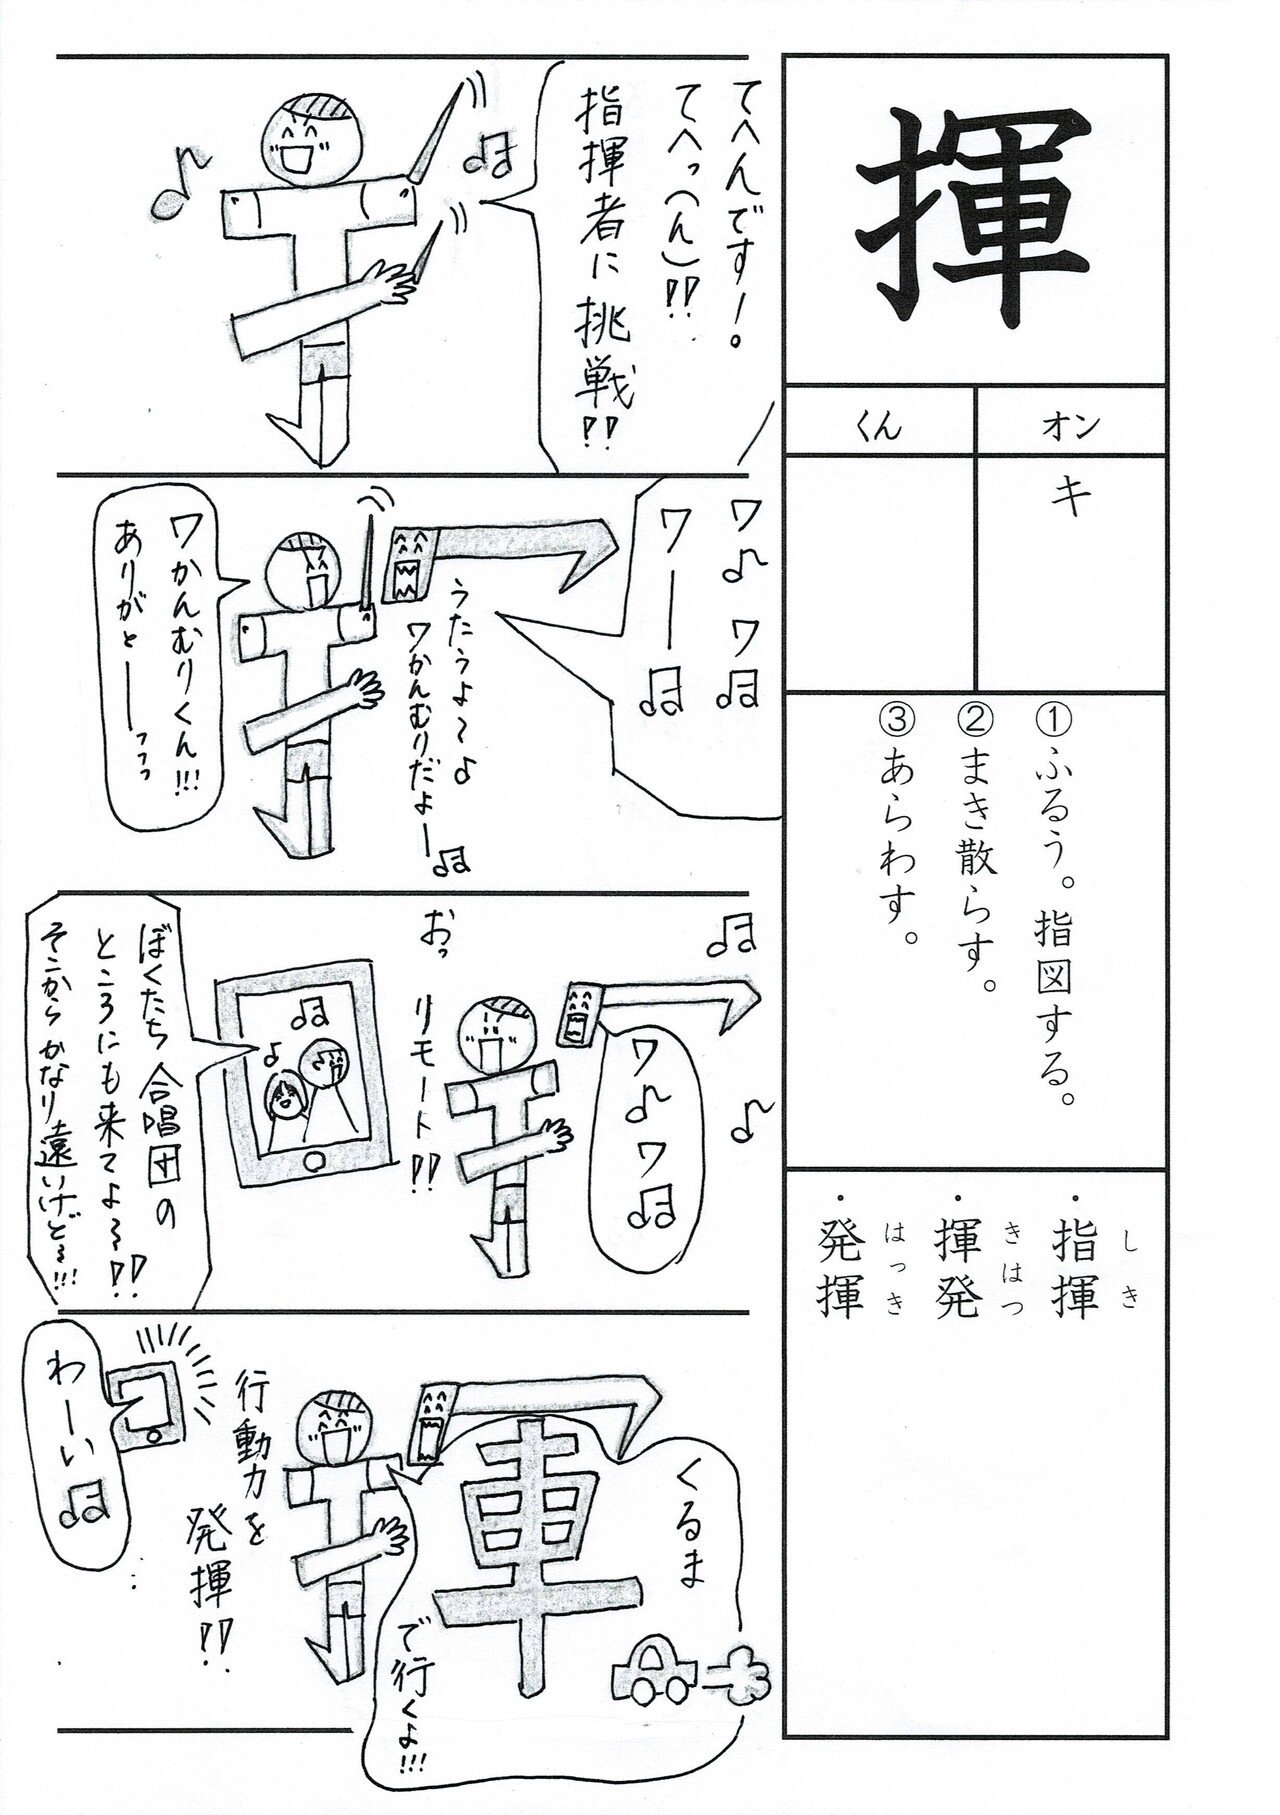 漢字四コマ漫画 小６の漢字 揮 はこうやって覚えようの巻 Sun Sunny D01 Note